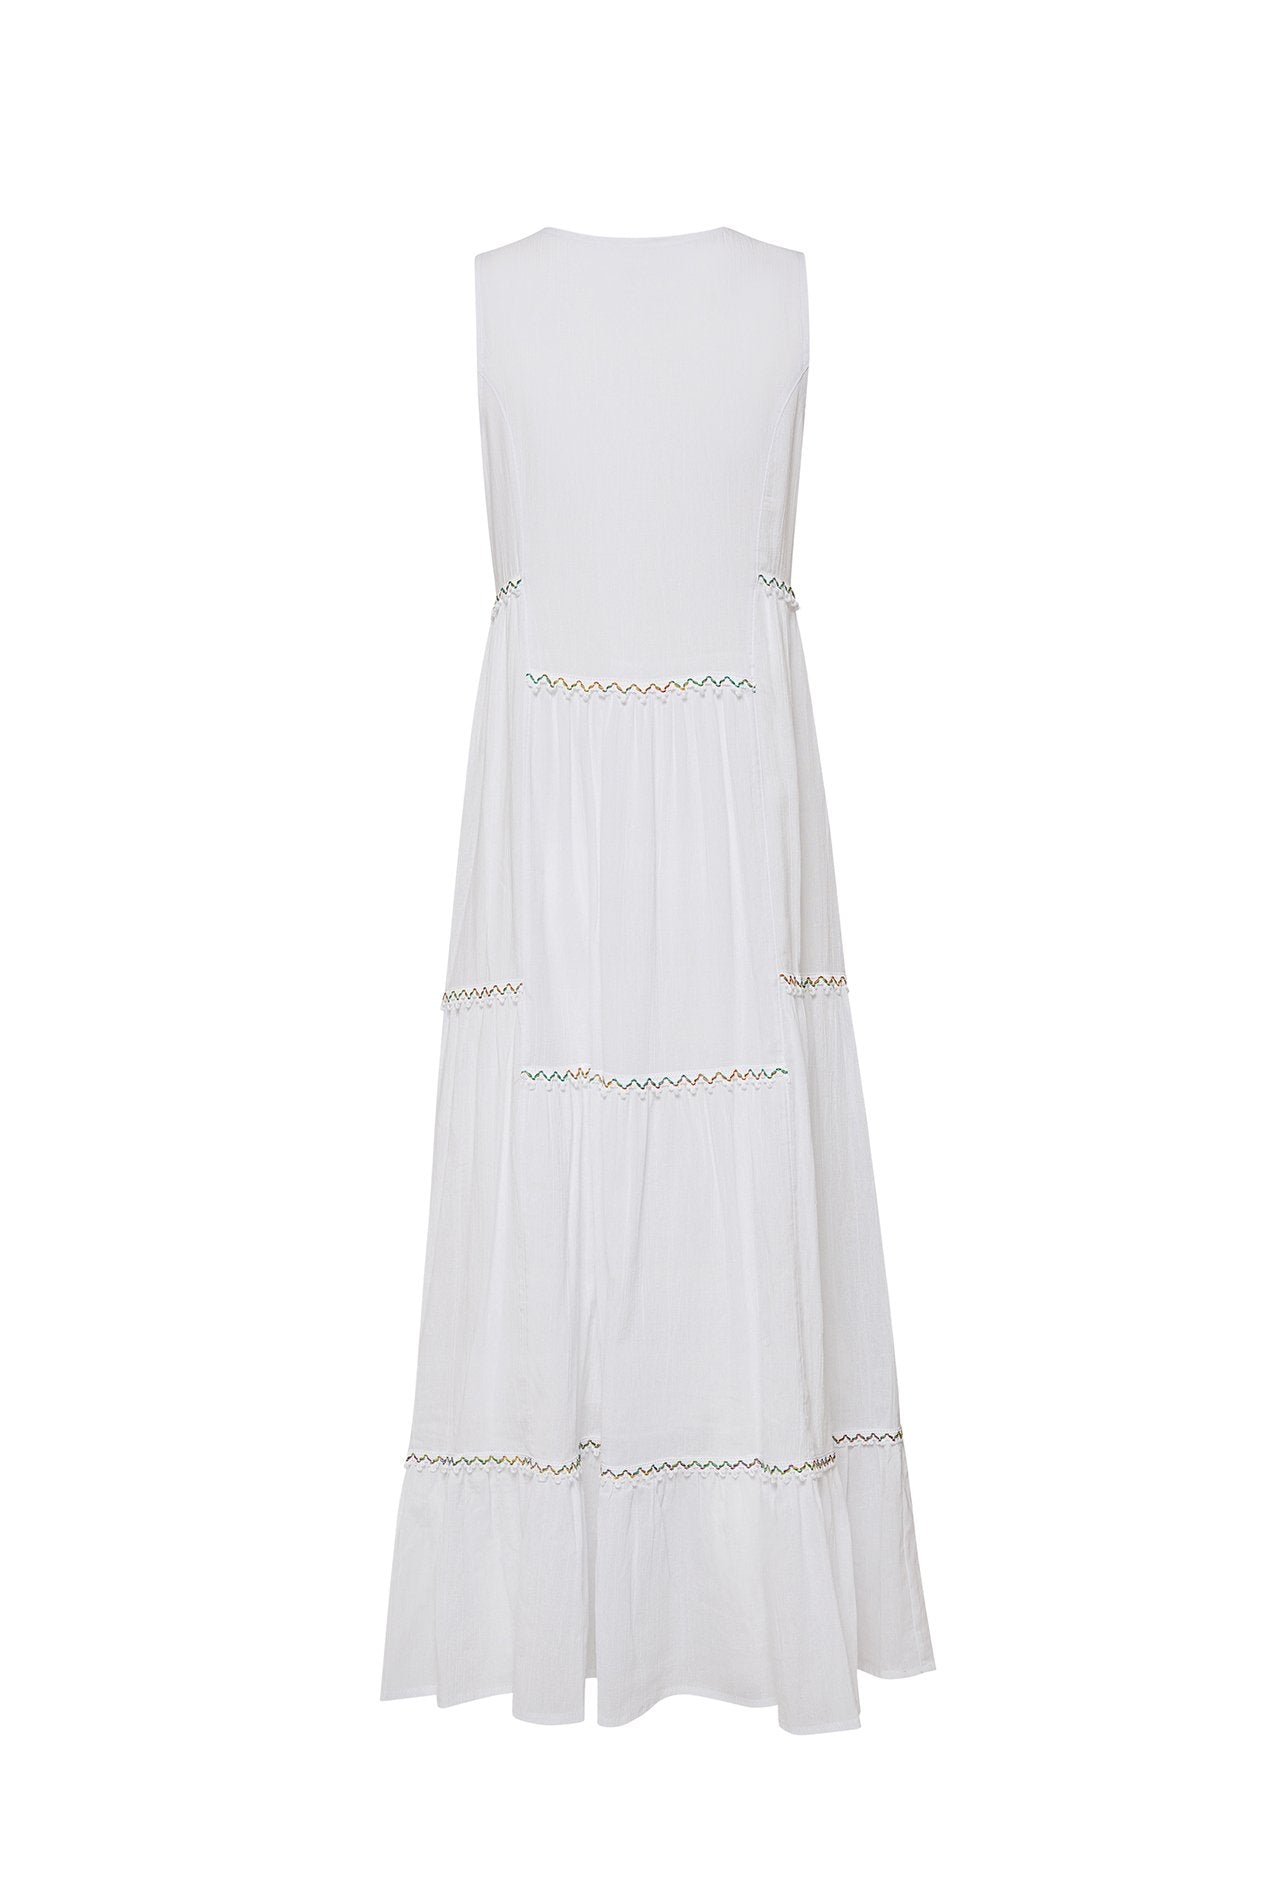 AMALFI MAXI DRESS - WHITE - All Good Laces